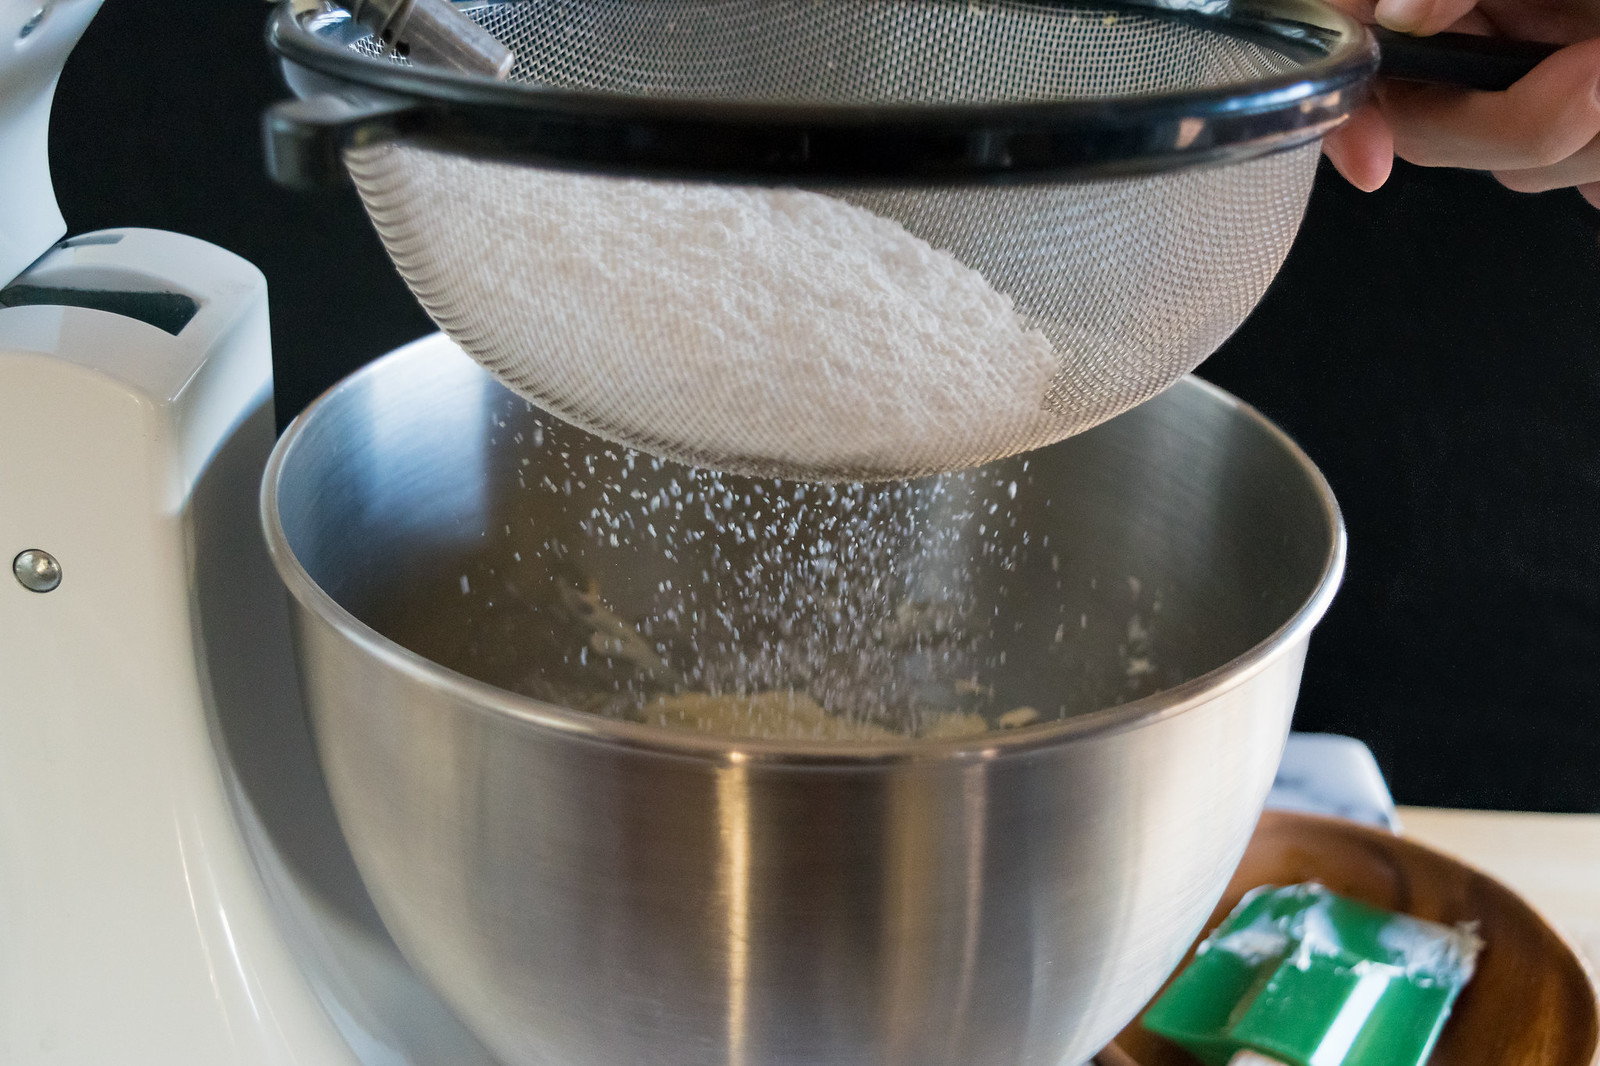 sifting the powdered sugar